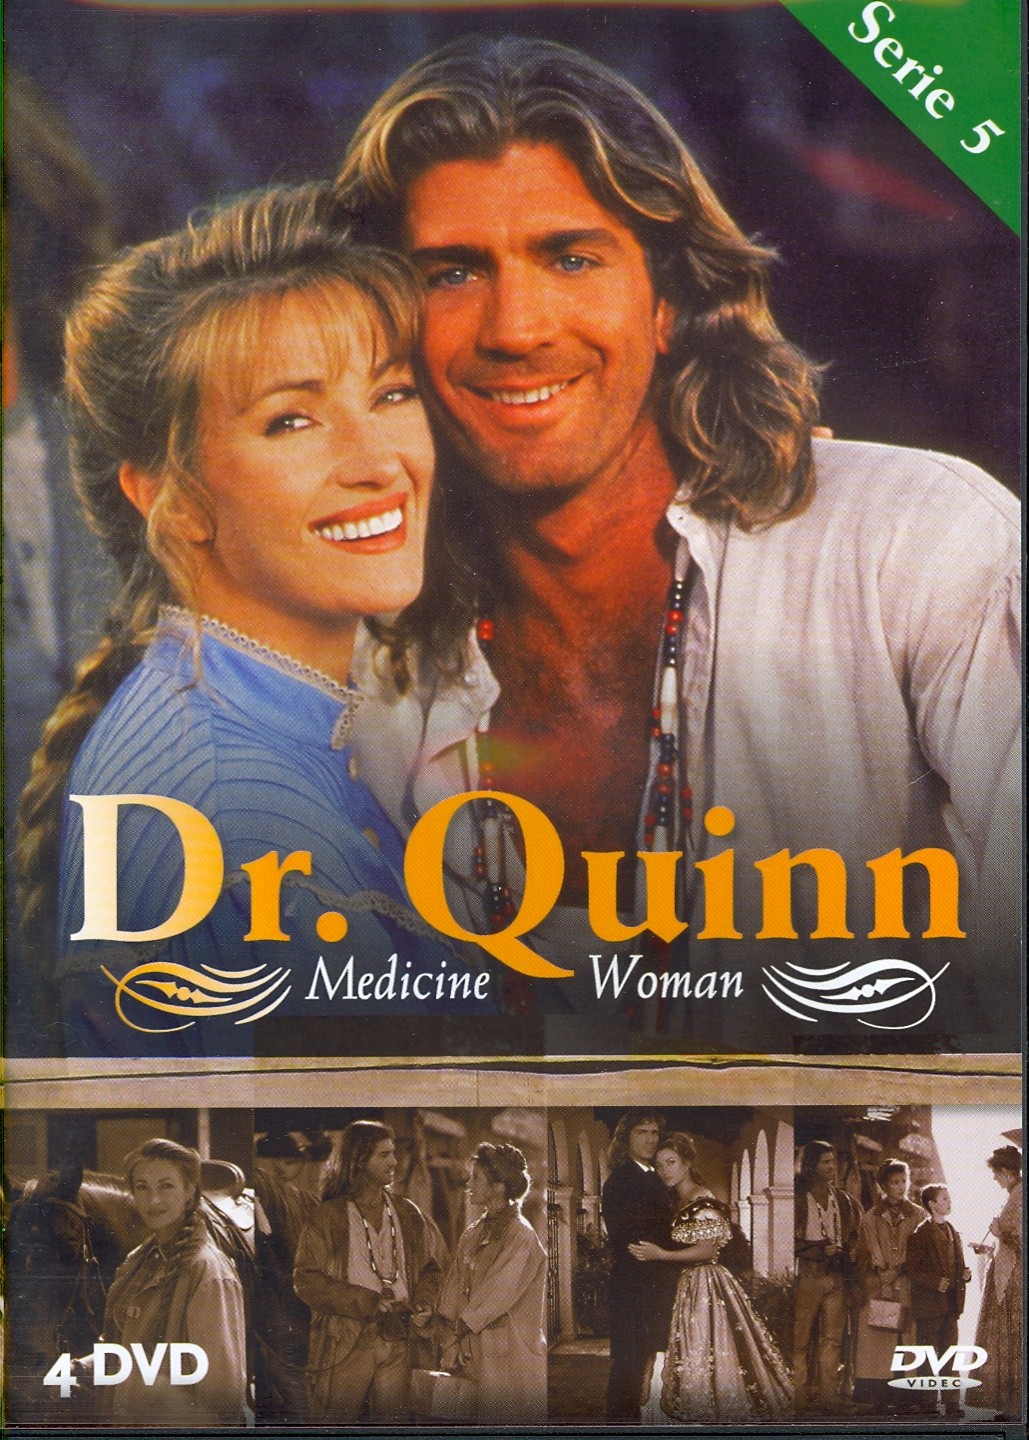 Dr. Quinn deel 5